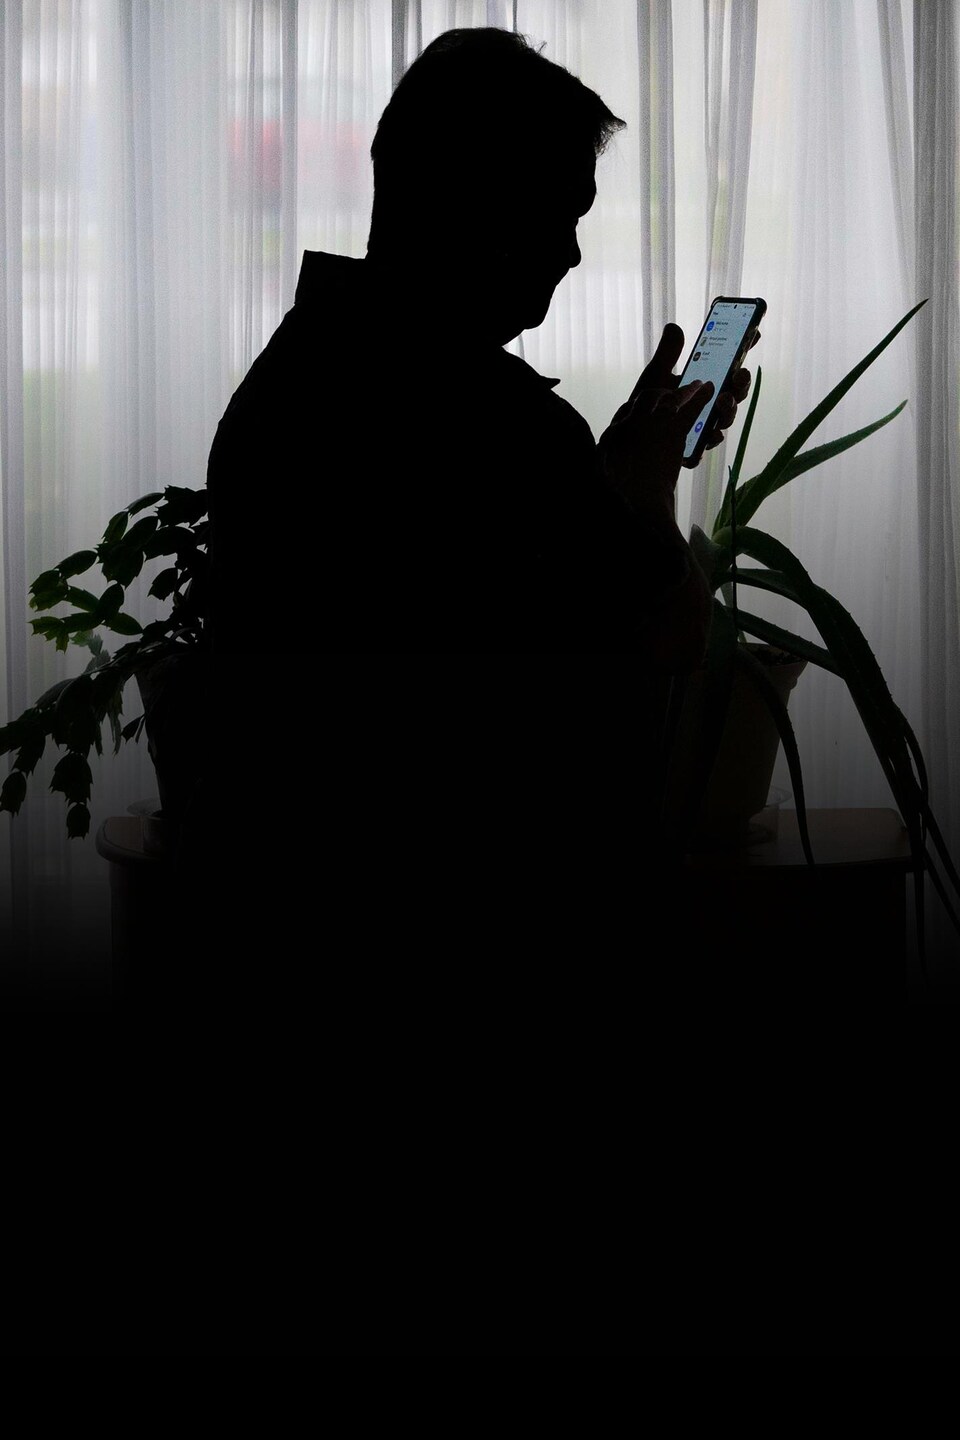 La silhouette d'une personne qui consulte son cellulaire.